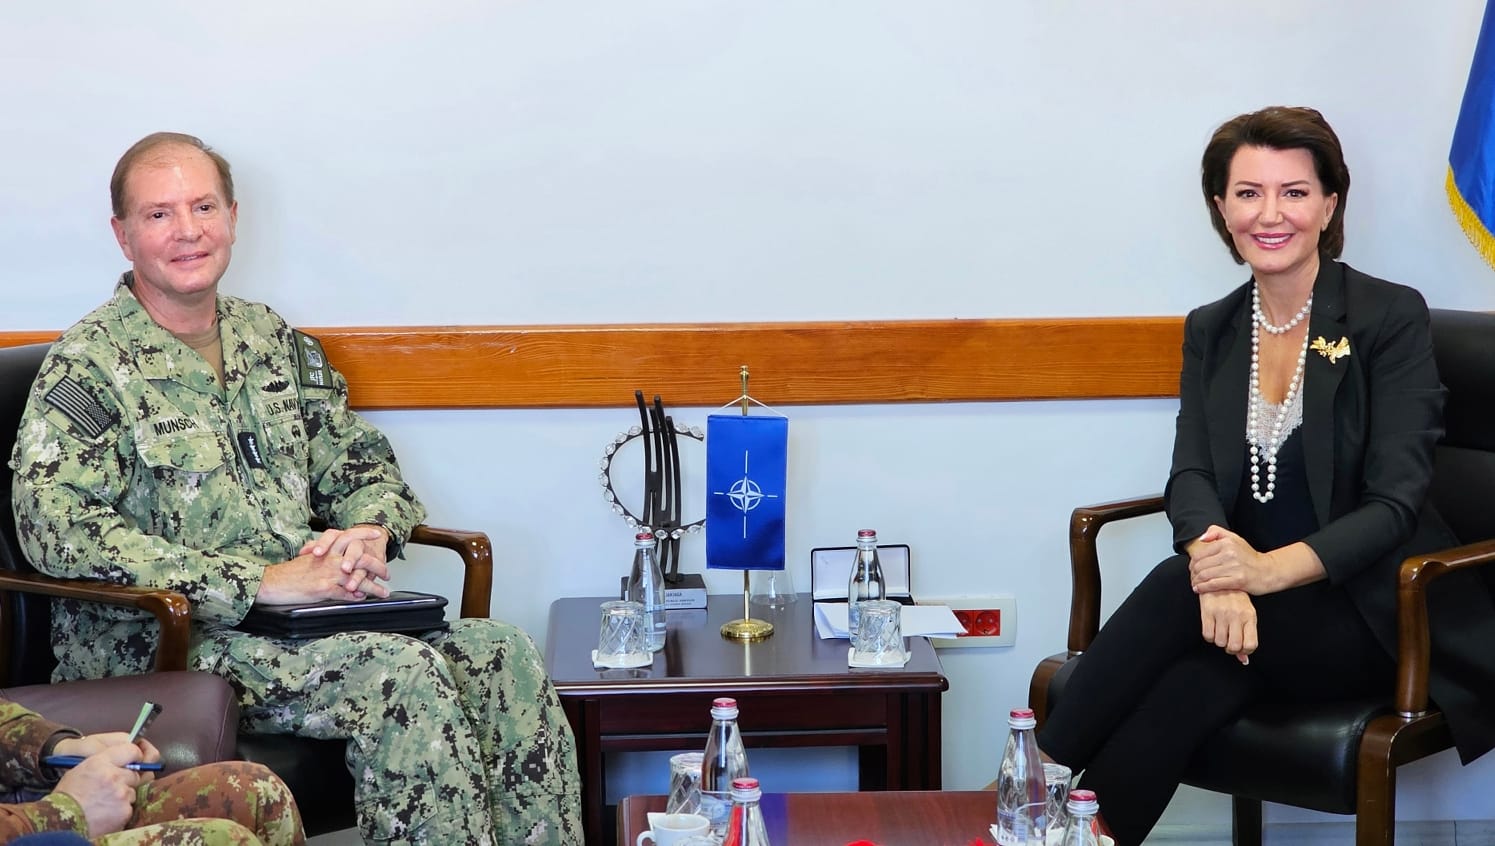 Jahjaga takohet me admiralin e NATO-s: Sulmi terrorist në veri ka ndryshuar thellësisht strukturat e sigurisë në rajon